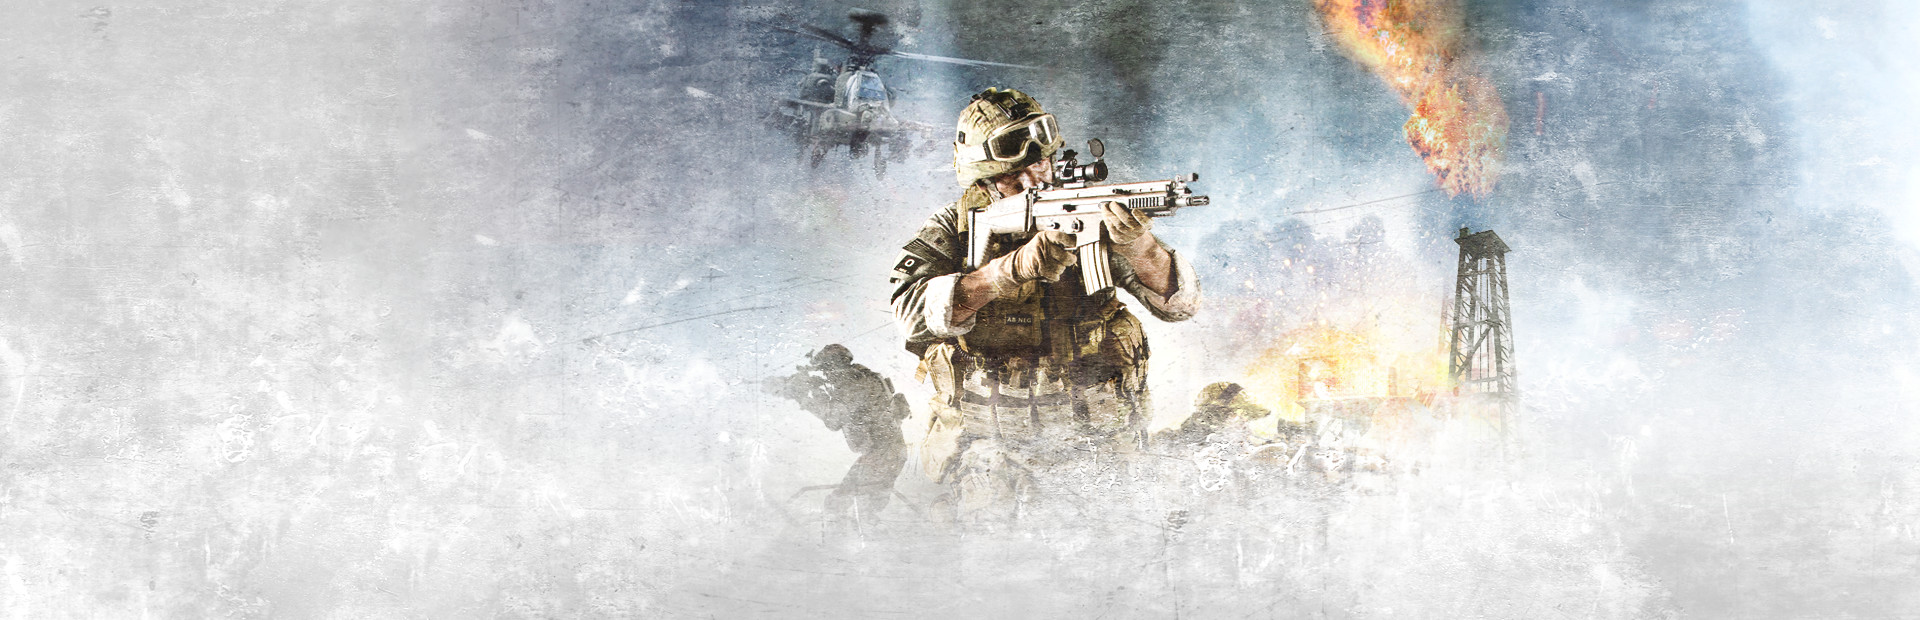 Arma 2: Operation Arrowhead cover image